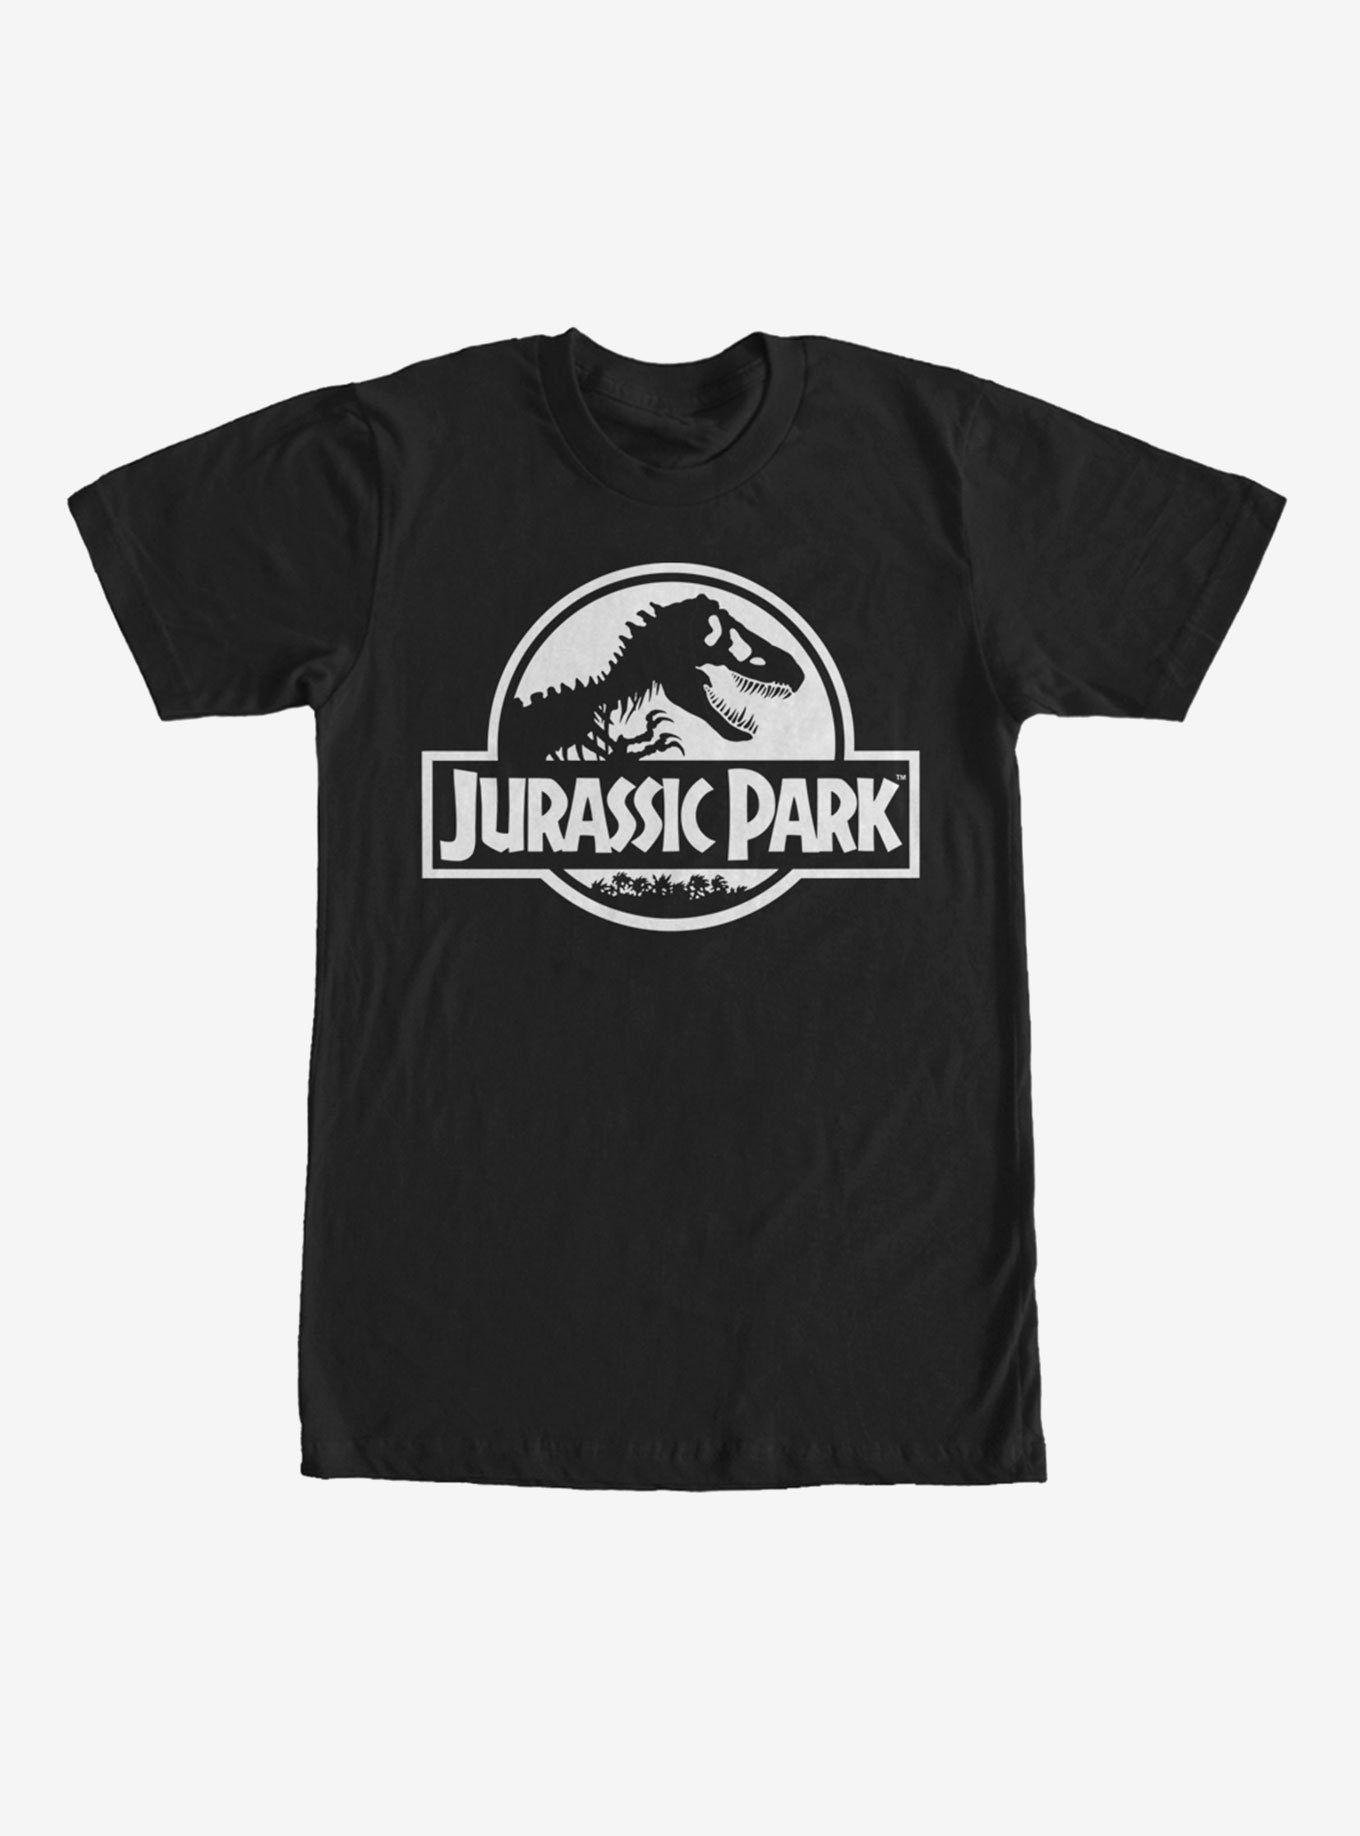 Black Dinosaur Logo - Jurassic Park Dinosaur Logo T-Shirt